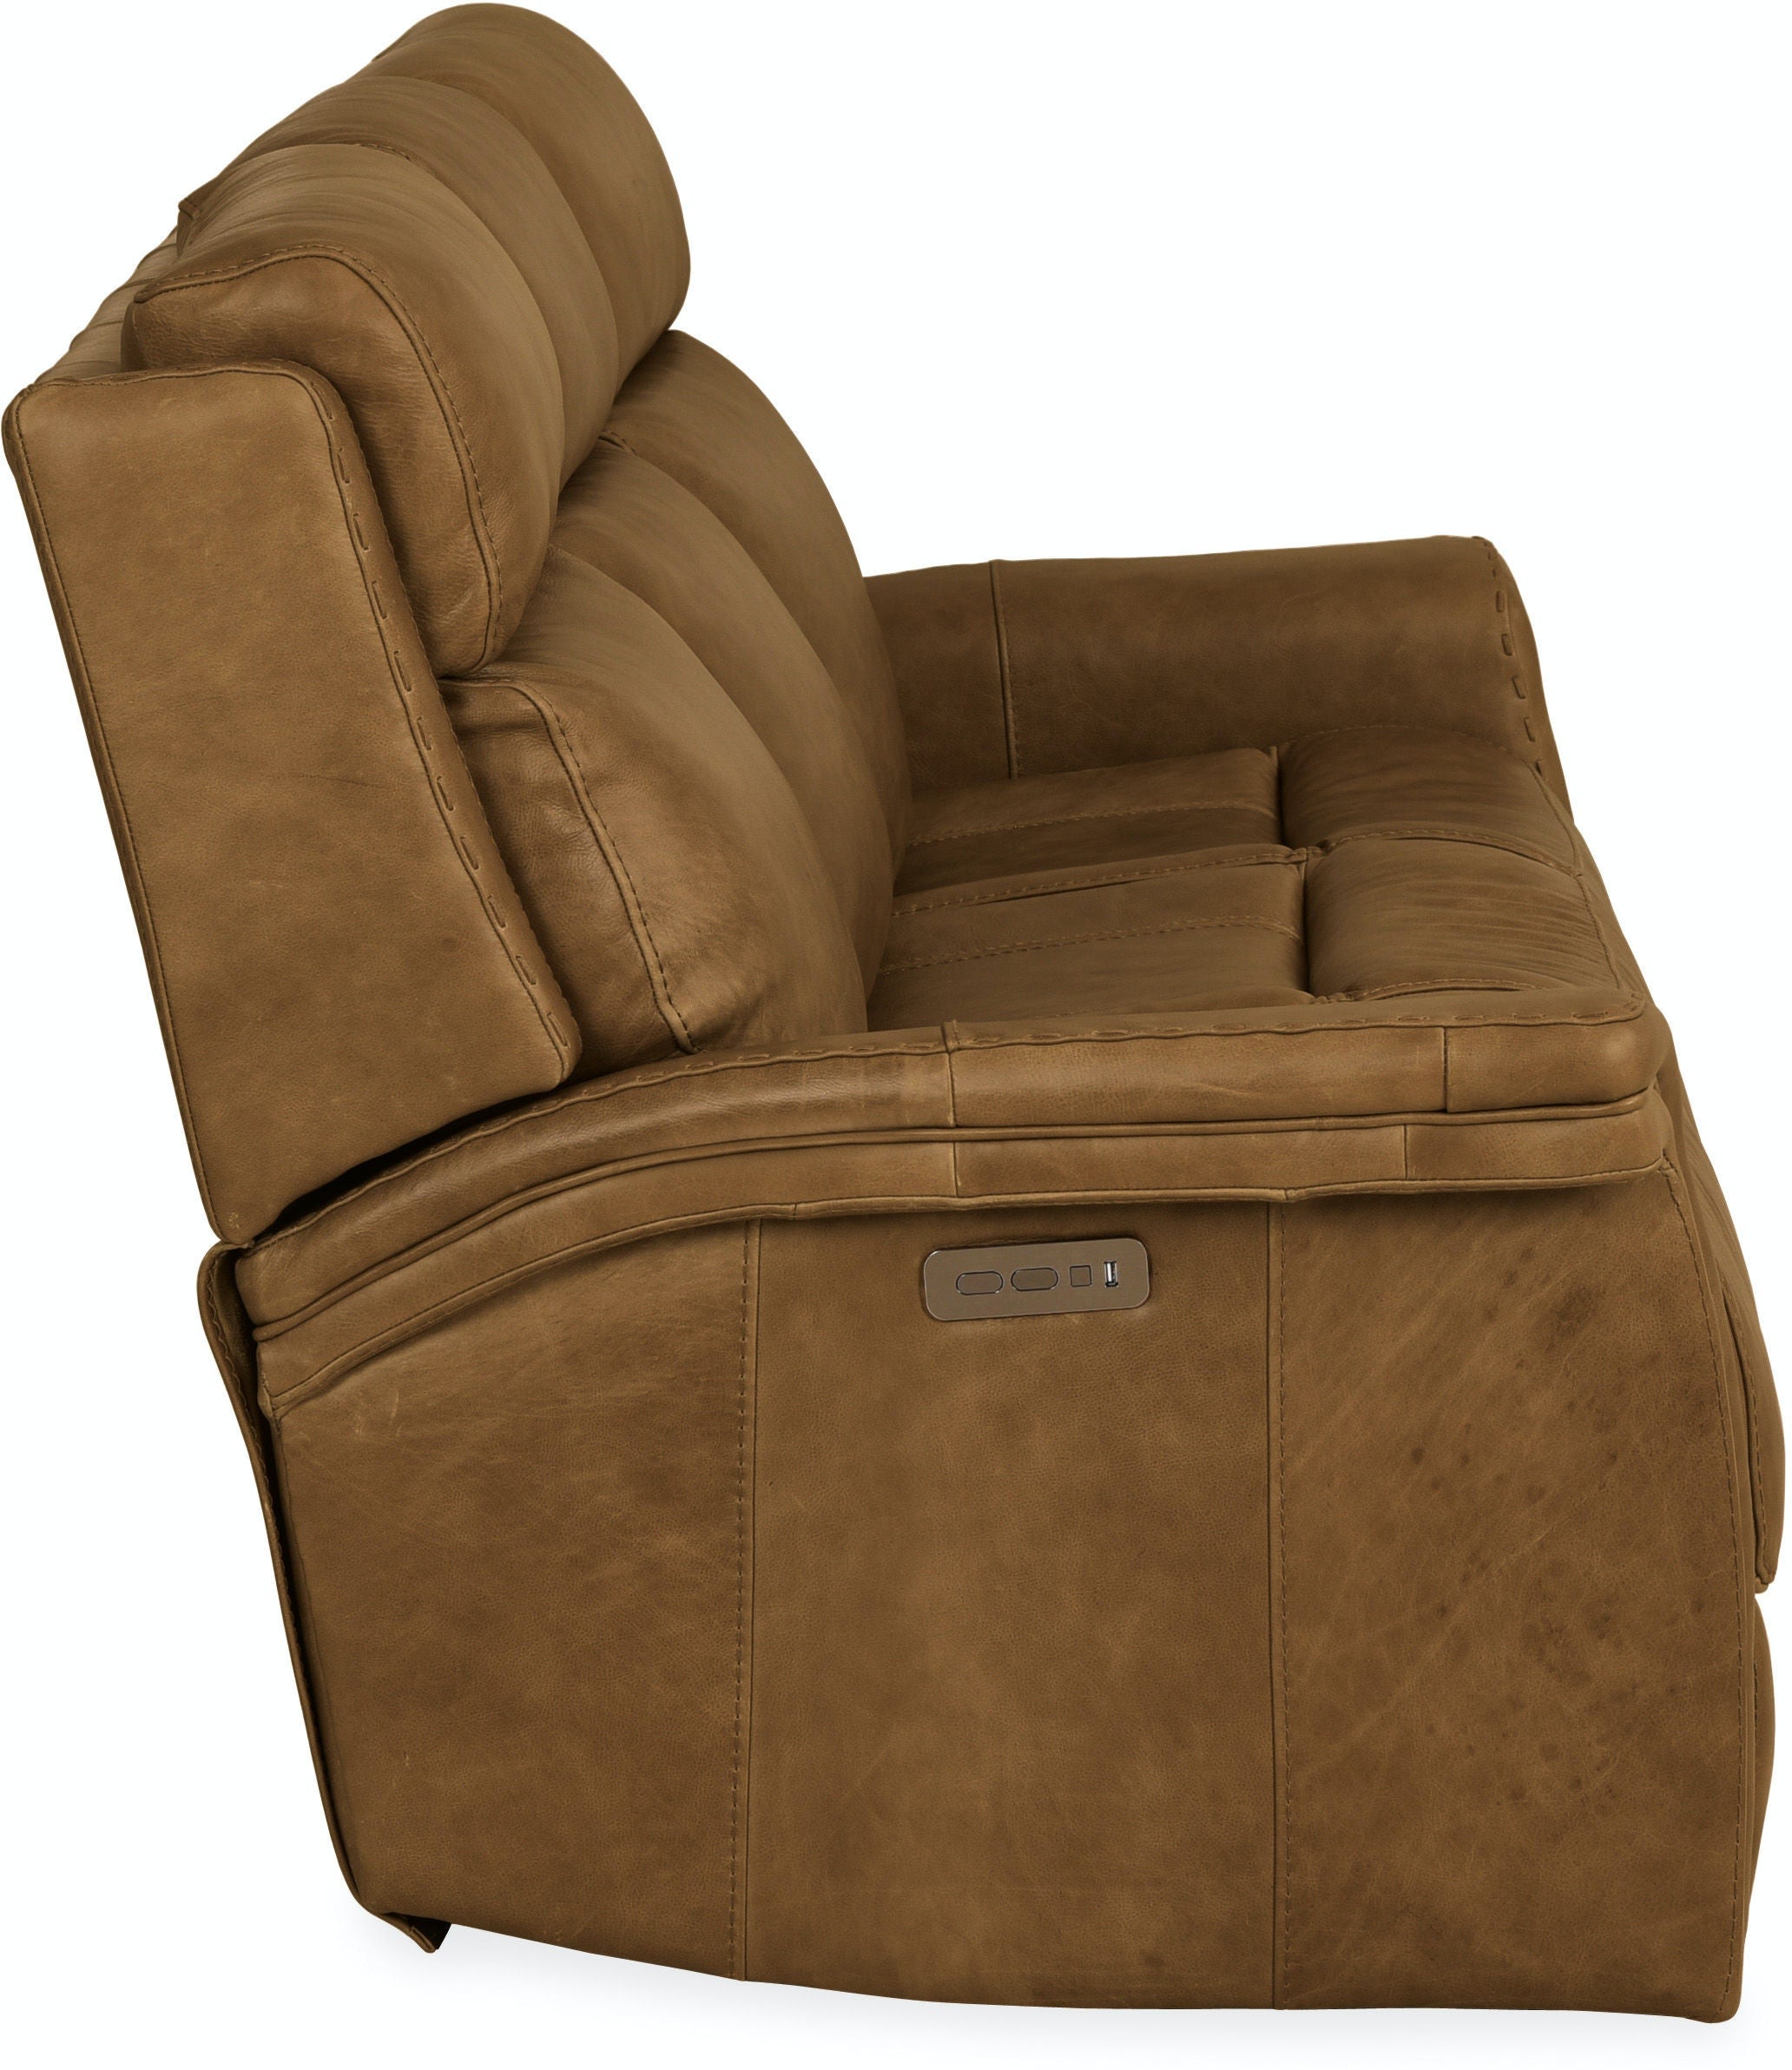 Hooker Furniture Living Room Poise Power Recliner Sofa w/ Power Headrest